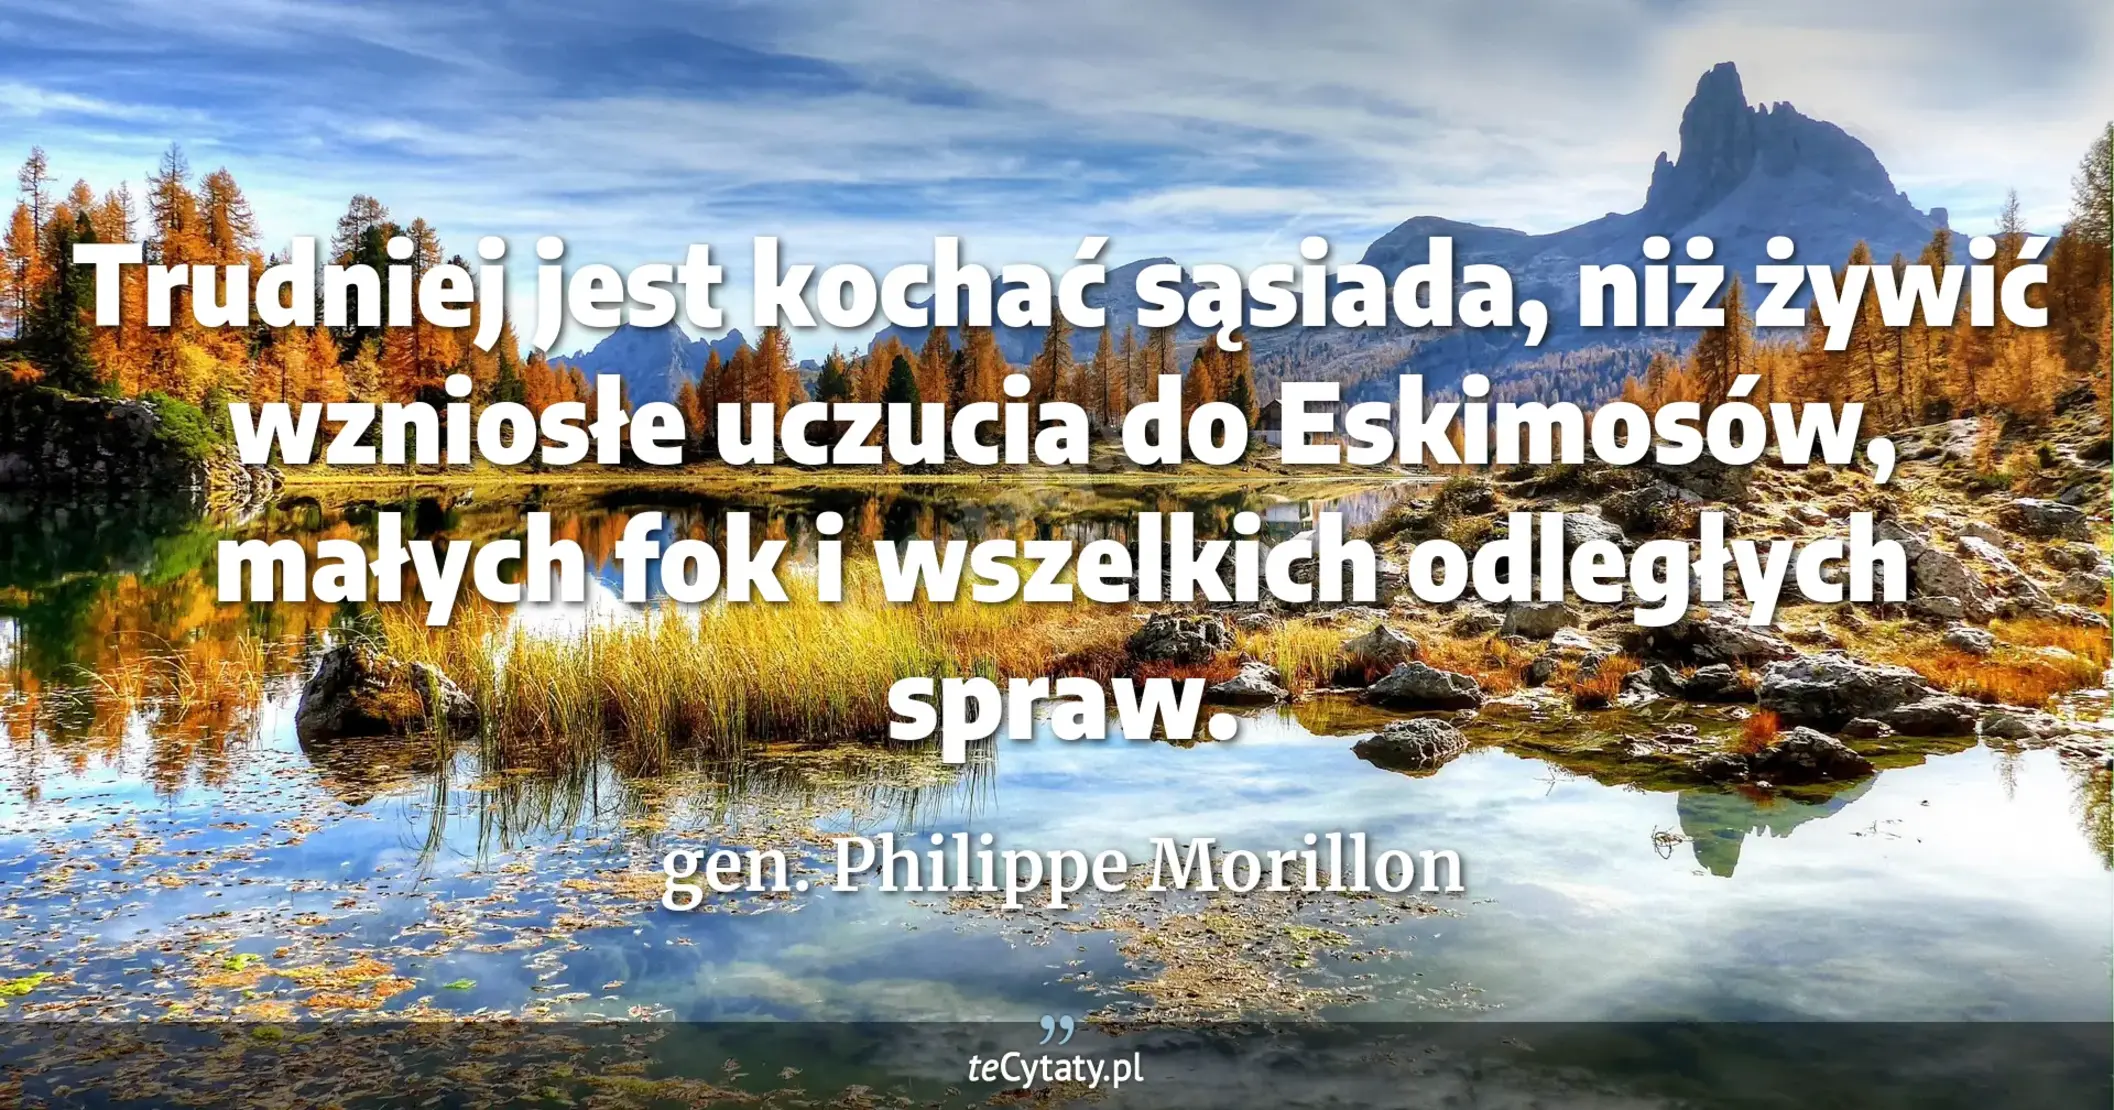 Trudniej jest kochać sąsiada, niż żywić wzniosłe uczucia do Eskimosów, małych fok i wszelkich odległych spraw. - gen. Philippe Morillon